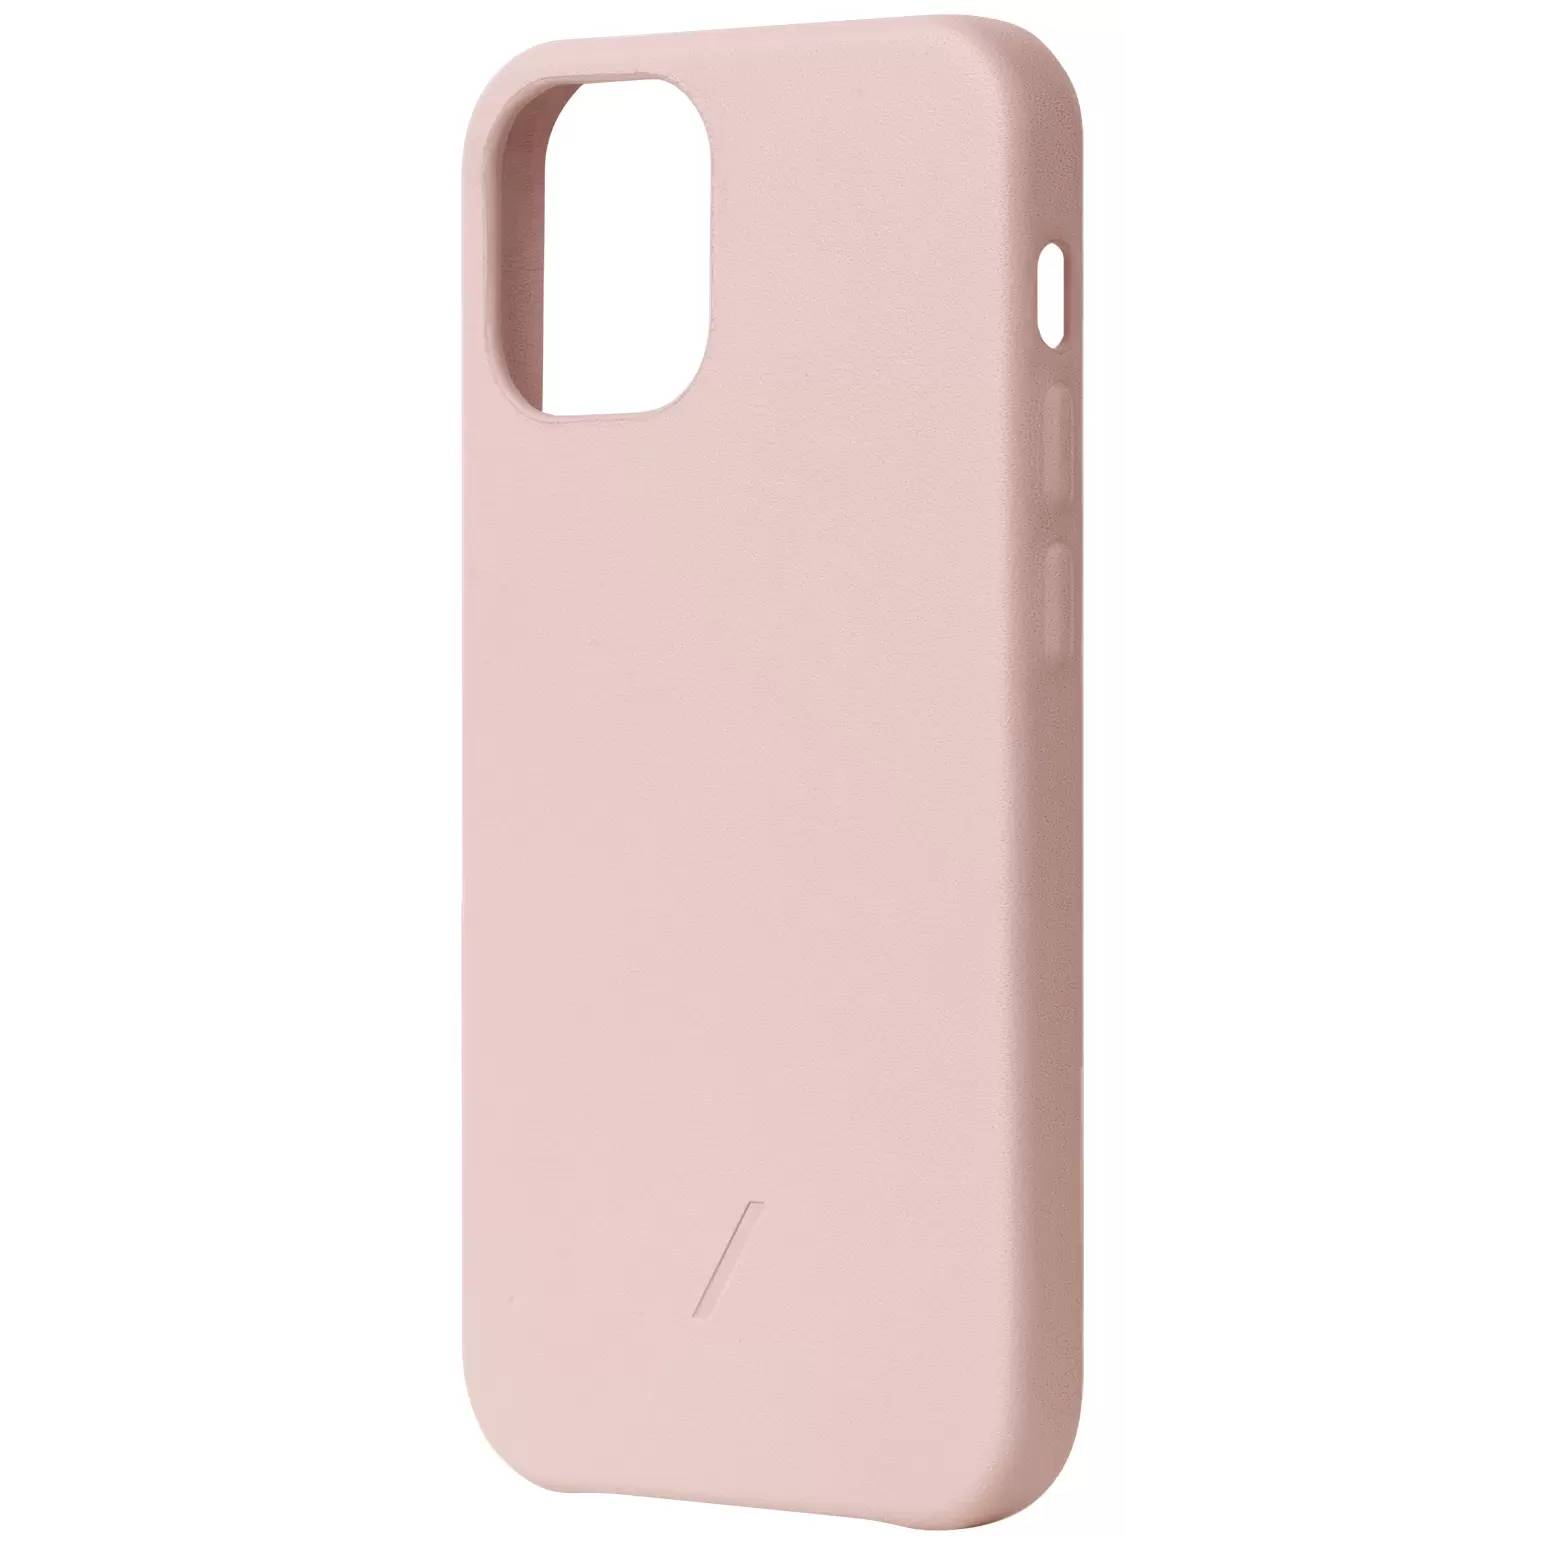 Фото — Чехол для смартфона Native Union CLIC CLASSIC iPhone 12/12 Pro, розовый